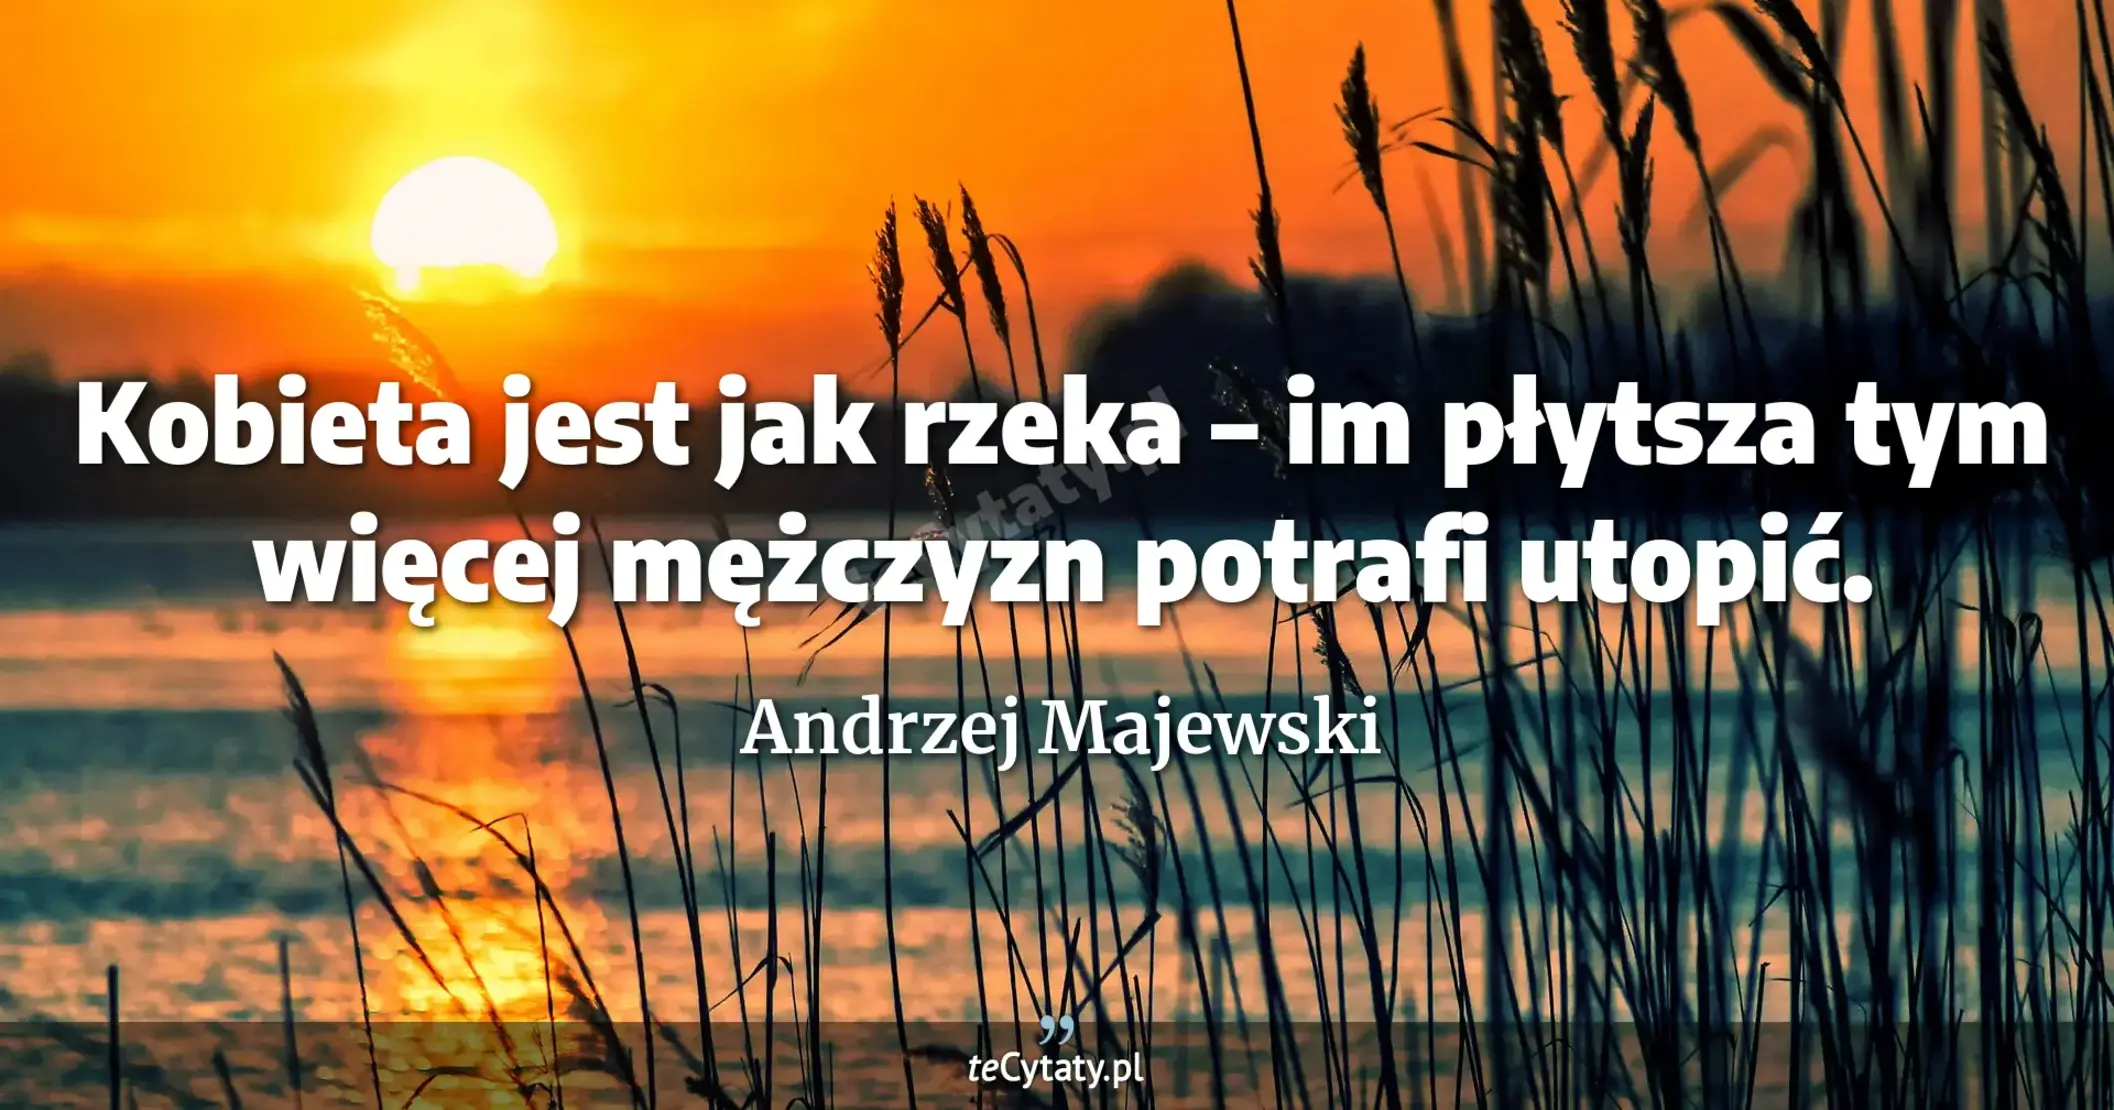 Kobieta jest jak rzeka – im płytsza tym więcej mężczyzn potrafi utopić. - Andrzej Majewski